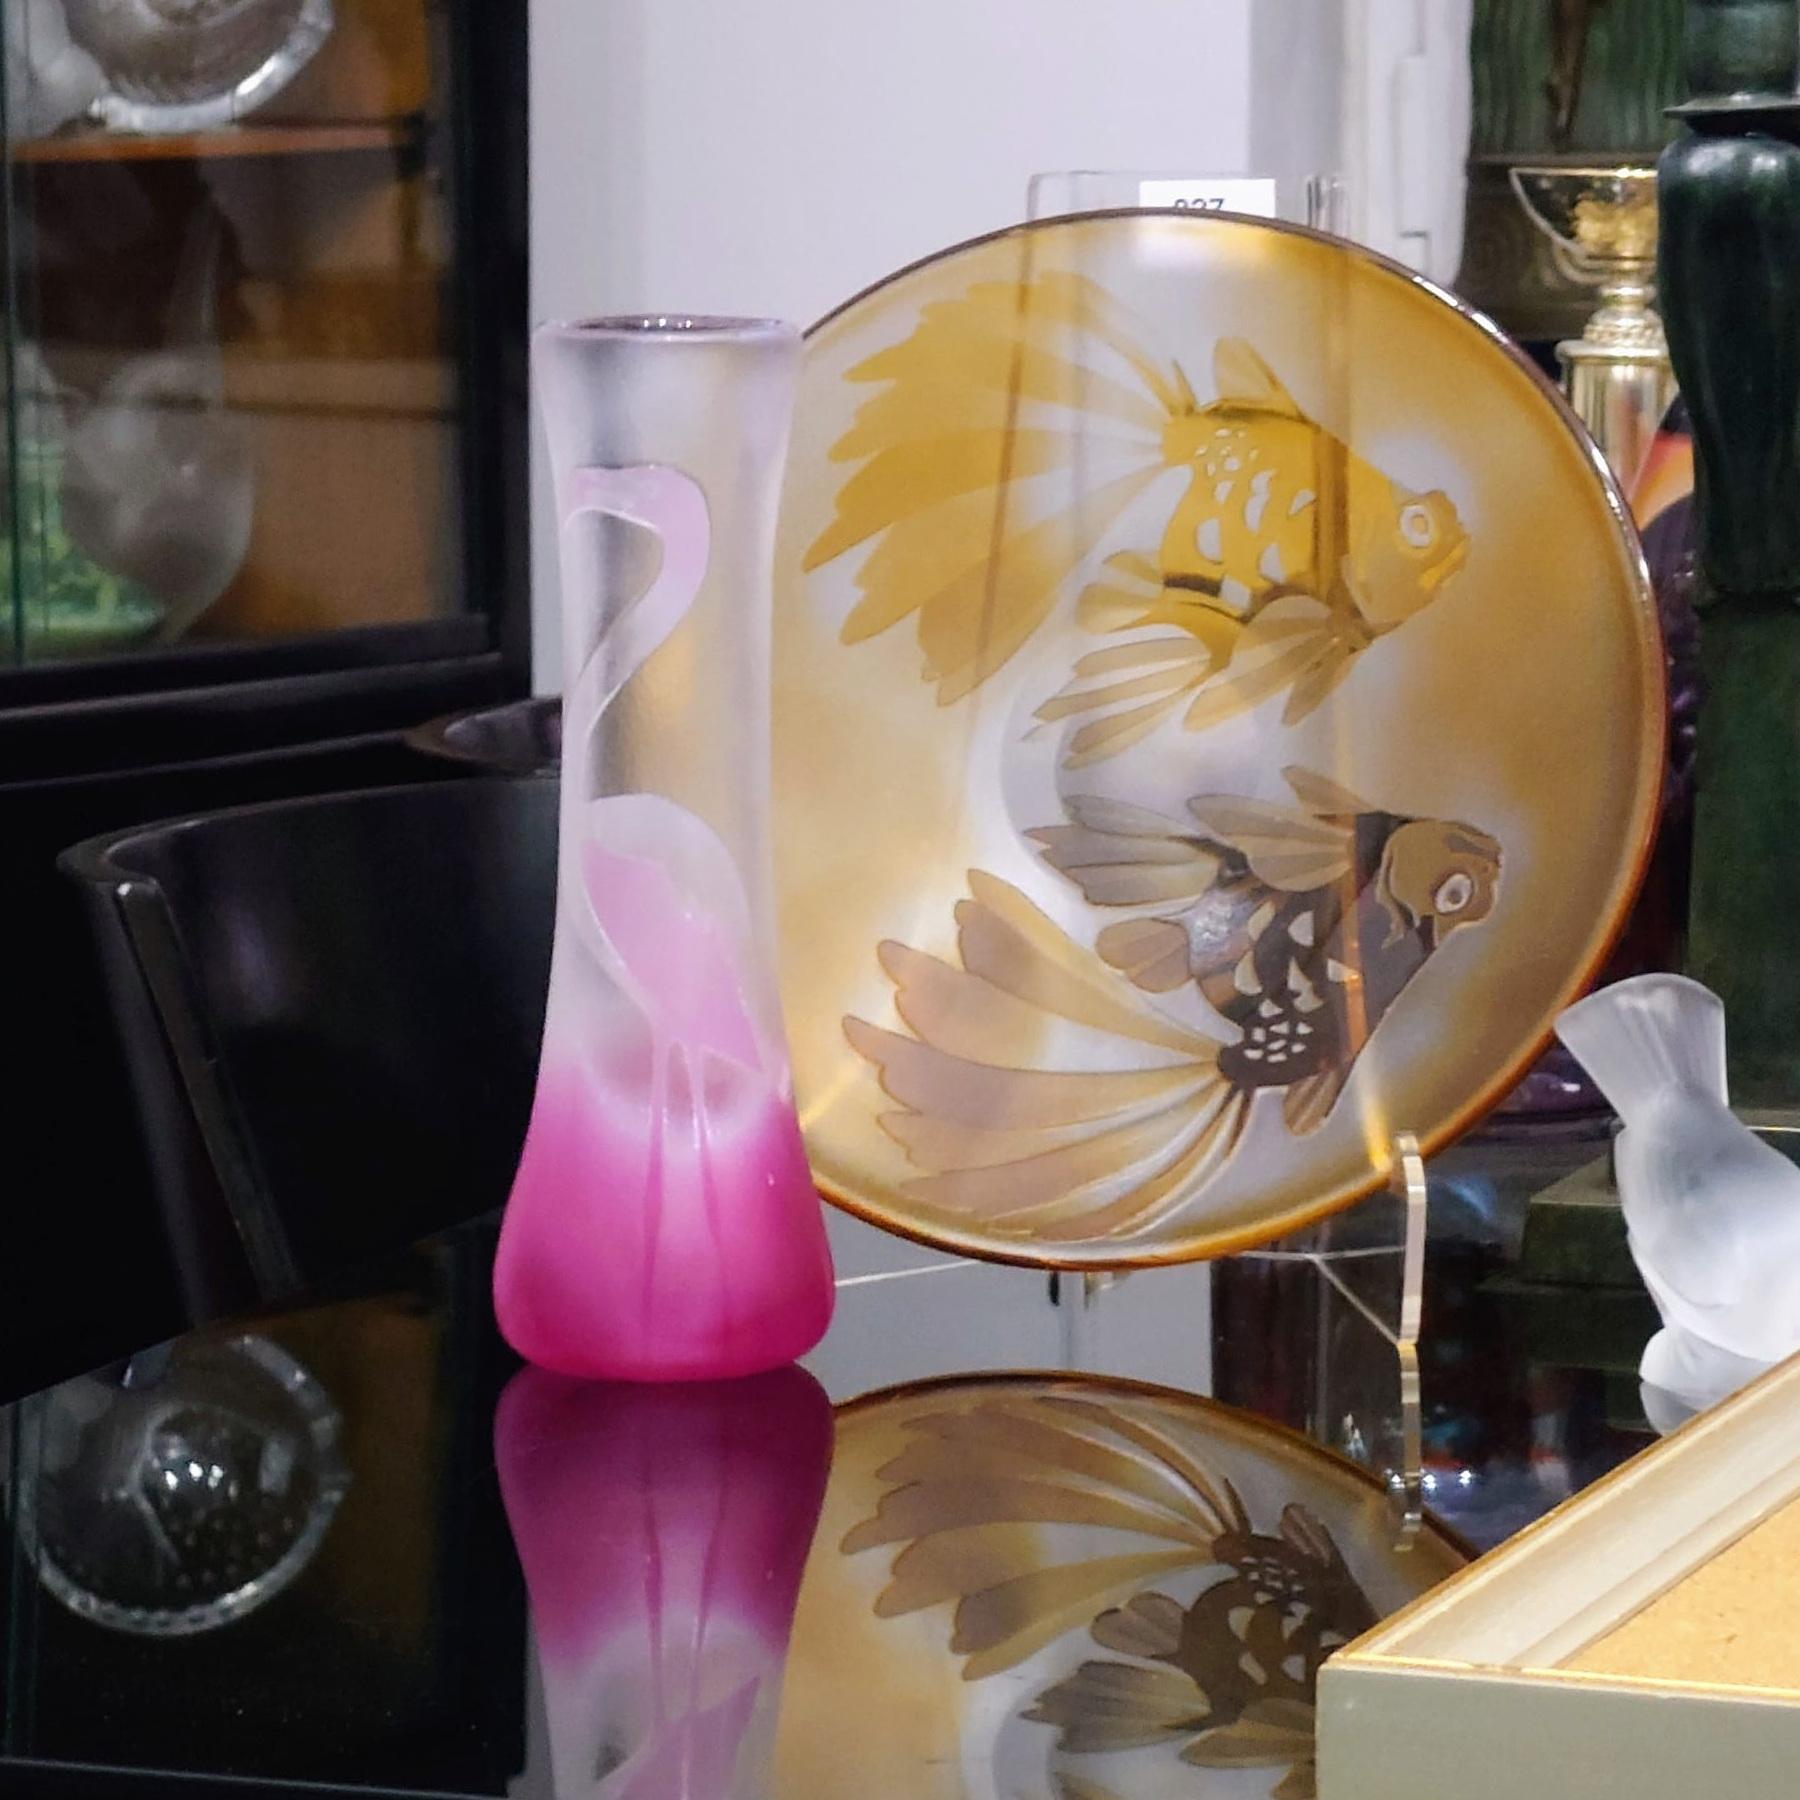 Paul Hoff for Kosta Boda Flamingo Vase, 1970. 
Magnifique vase en verre d'art décoré d'un flamant rose. Verre double couche, décor gravé.
Hauteur de 26 cm.
En très bon état.
Paul Hoff est un artiste suédois bien connu dans le domaine de la céramique